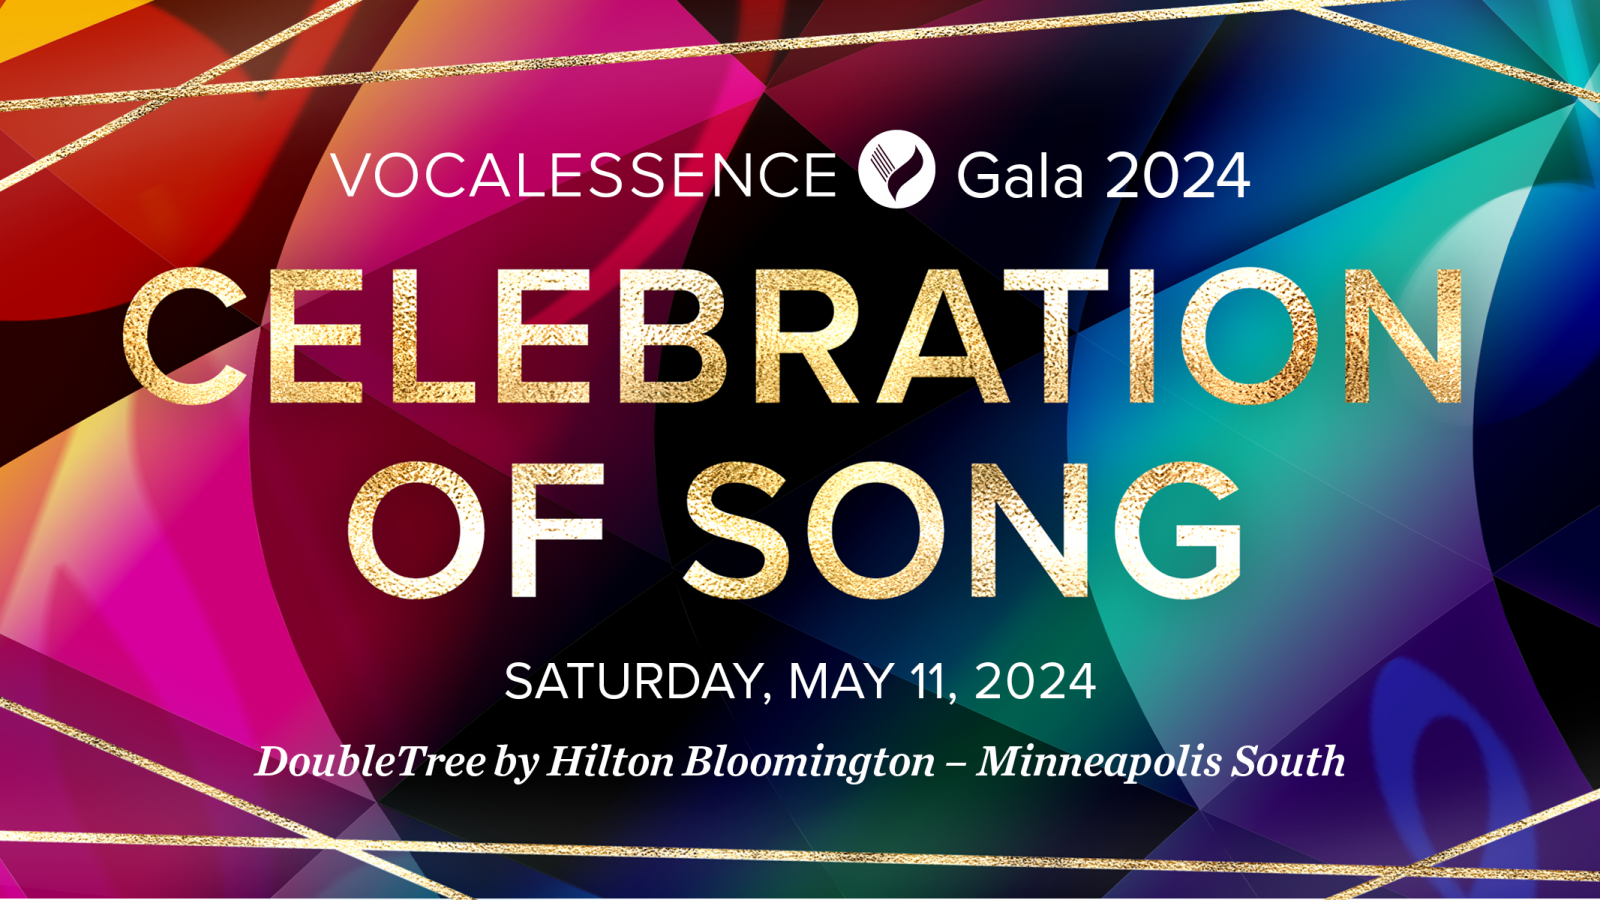 VocalEssence Logotipo de la Gala 2024 con las palabras "Celebration of Song" y la fecha y ubicación del evento en dorado frente a un fondo geométrico colorido. Crédito del diseño: Lora Joshi